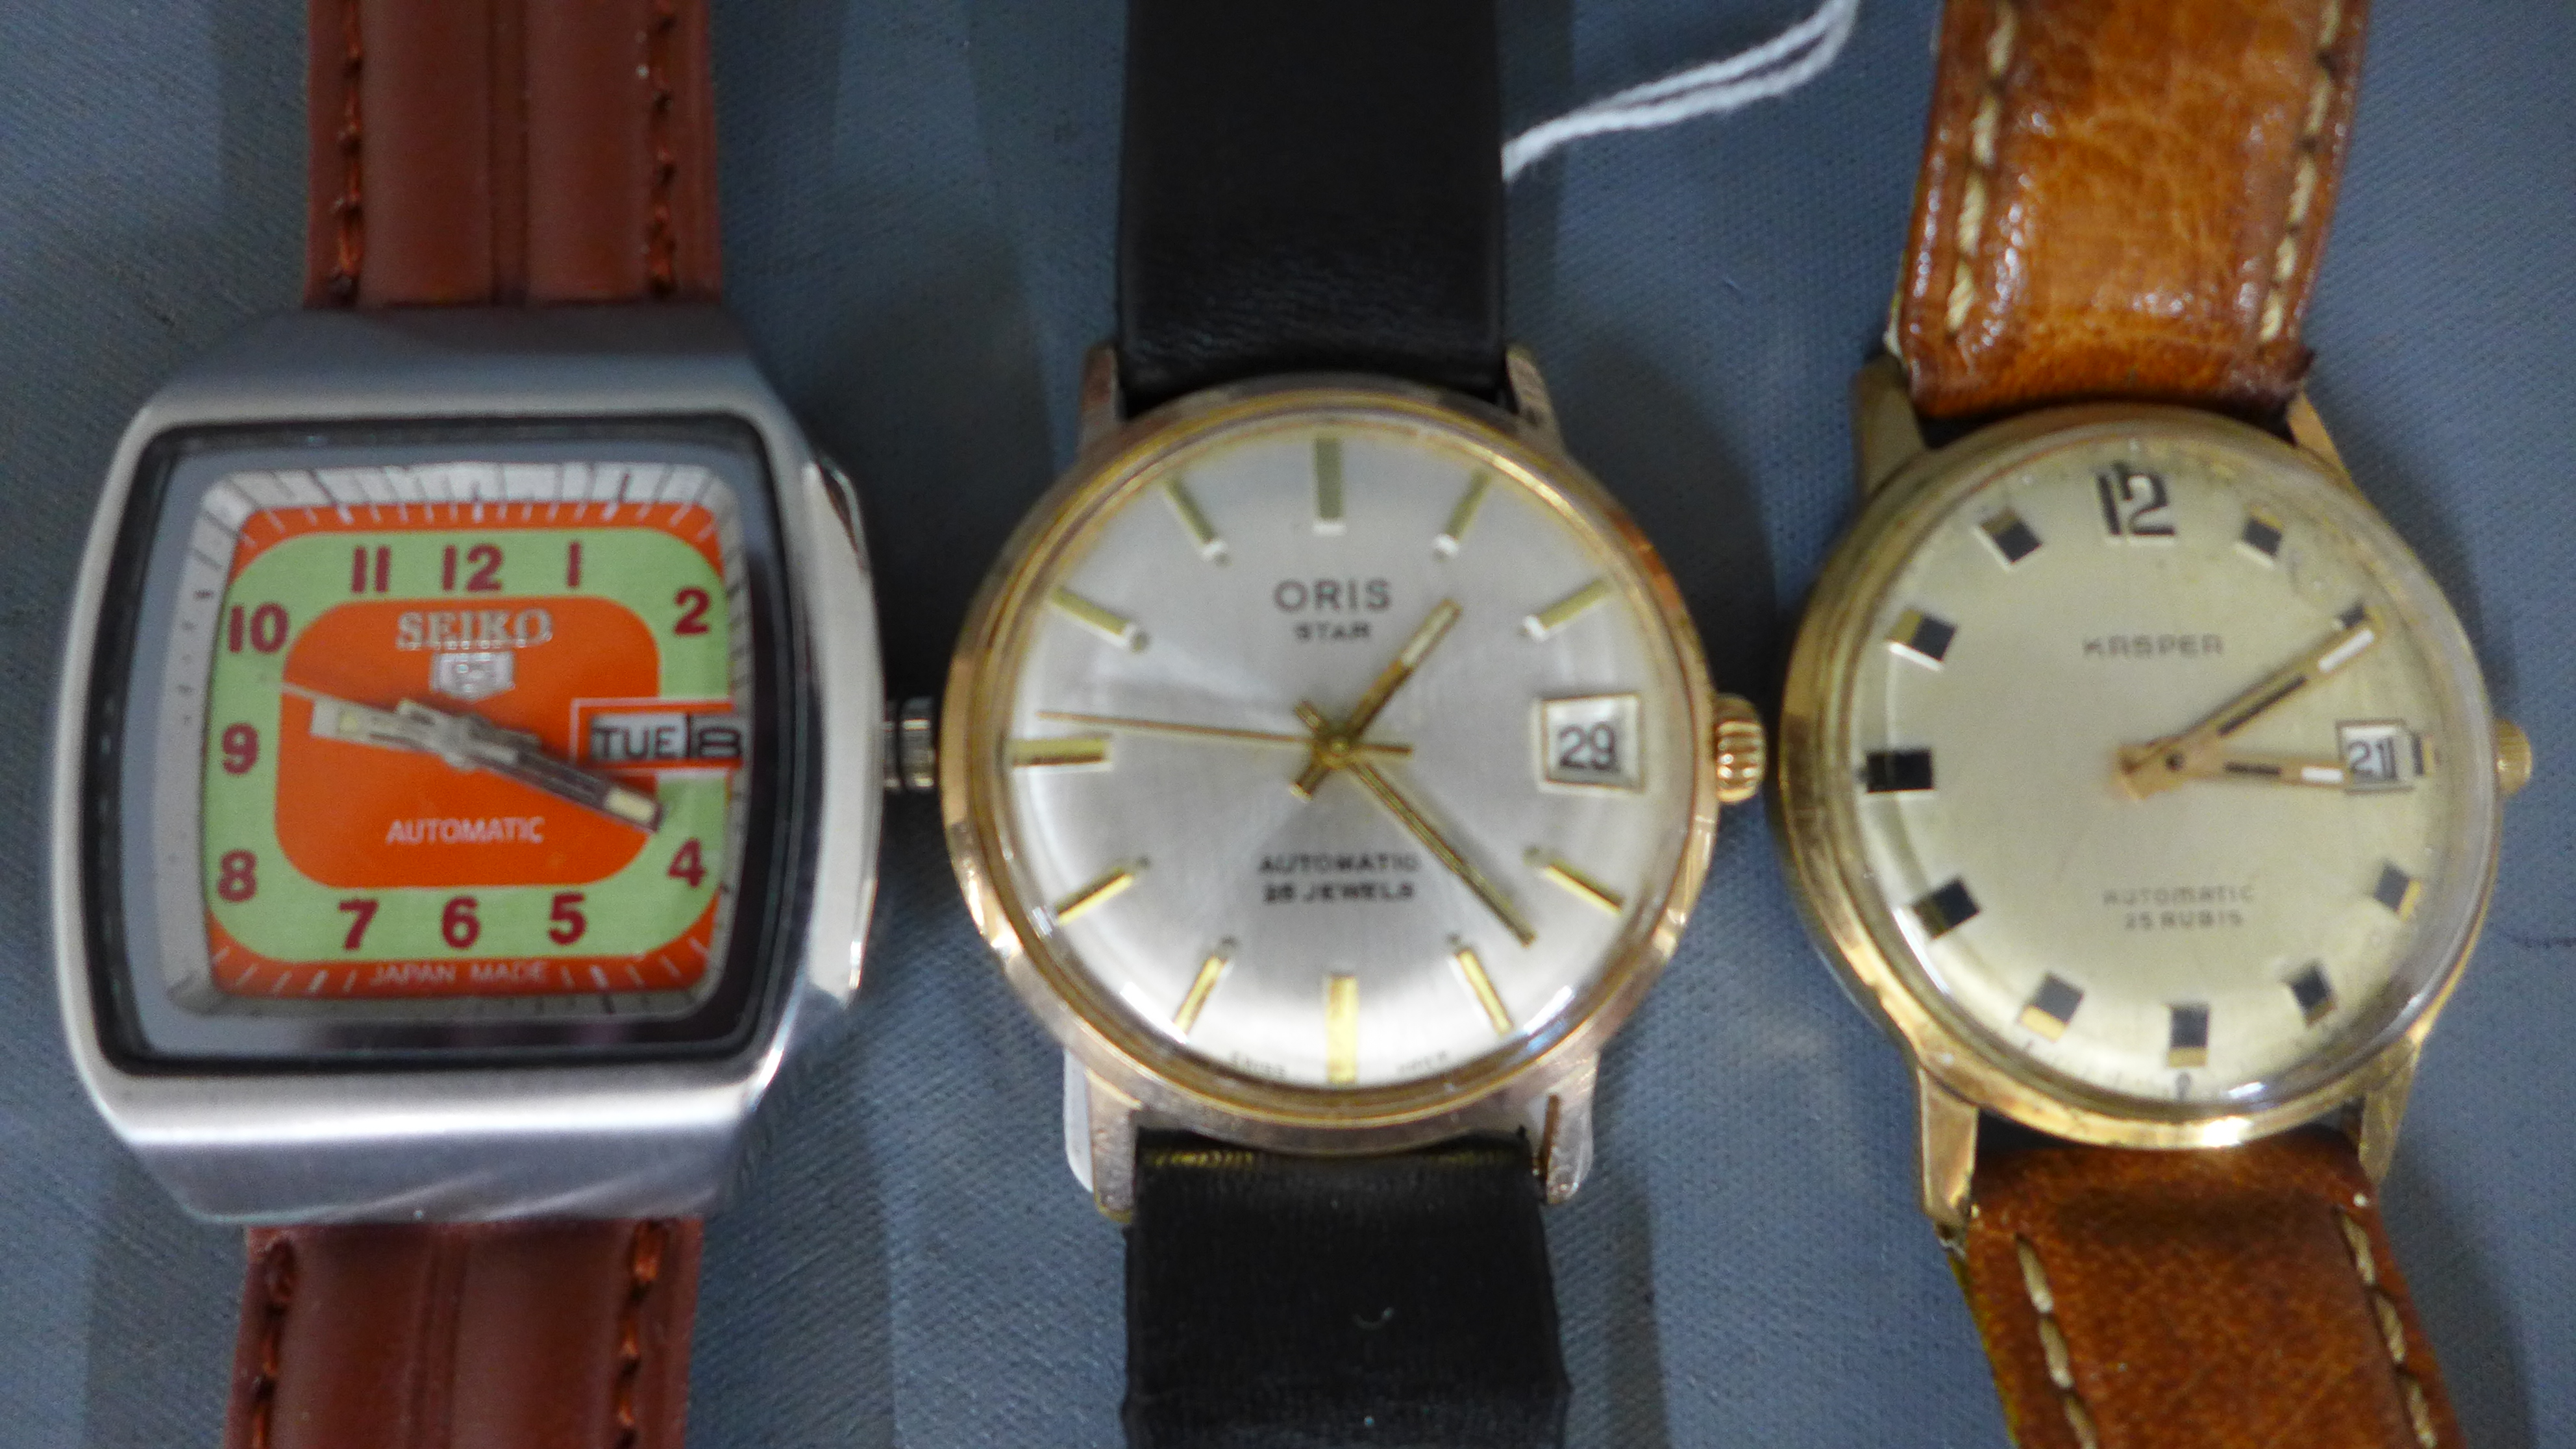 Three Gents wristwatches - Kasper Automatic,